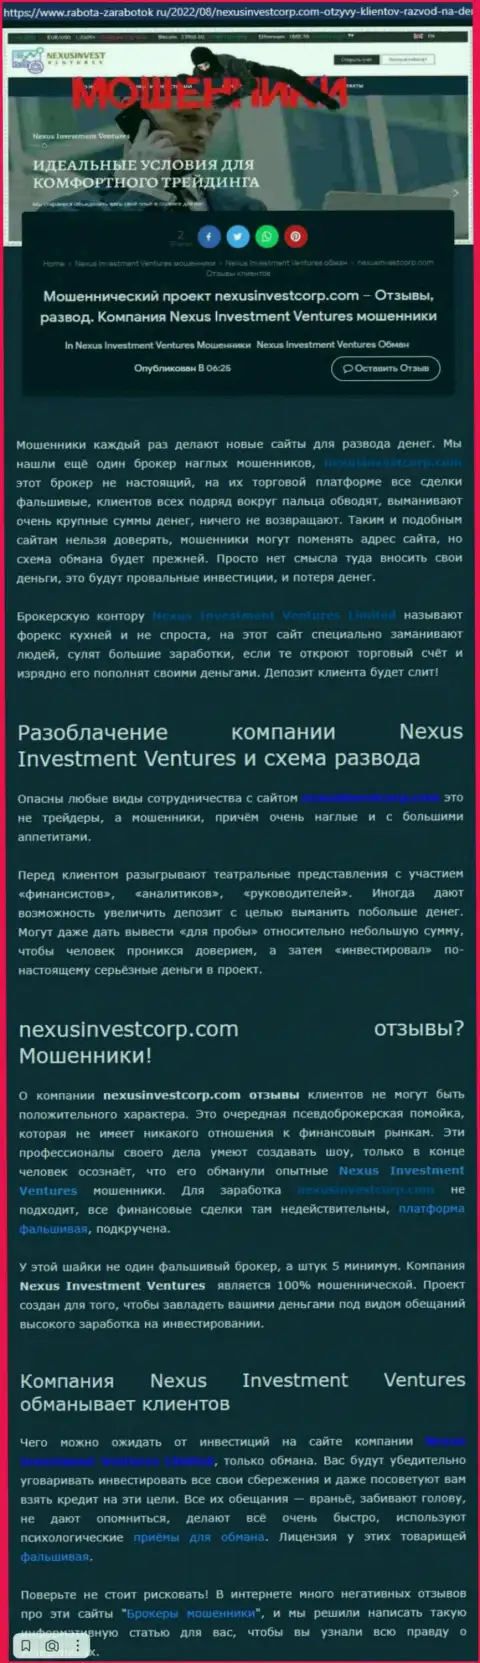 Если же не хотите быть еще одной жертвой Nexus Investment Ventures, бегите от них как можно дальше (обзор)